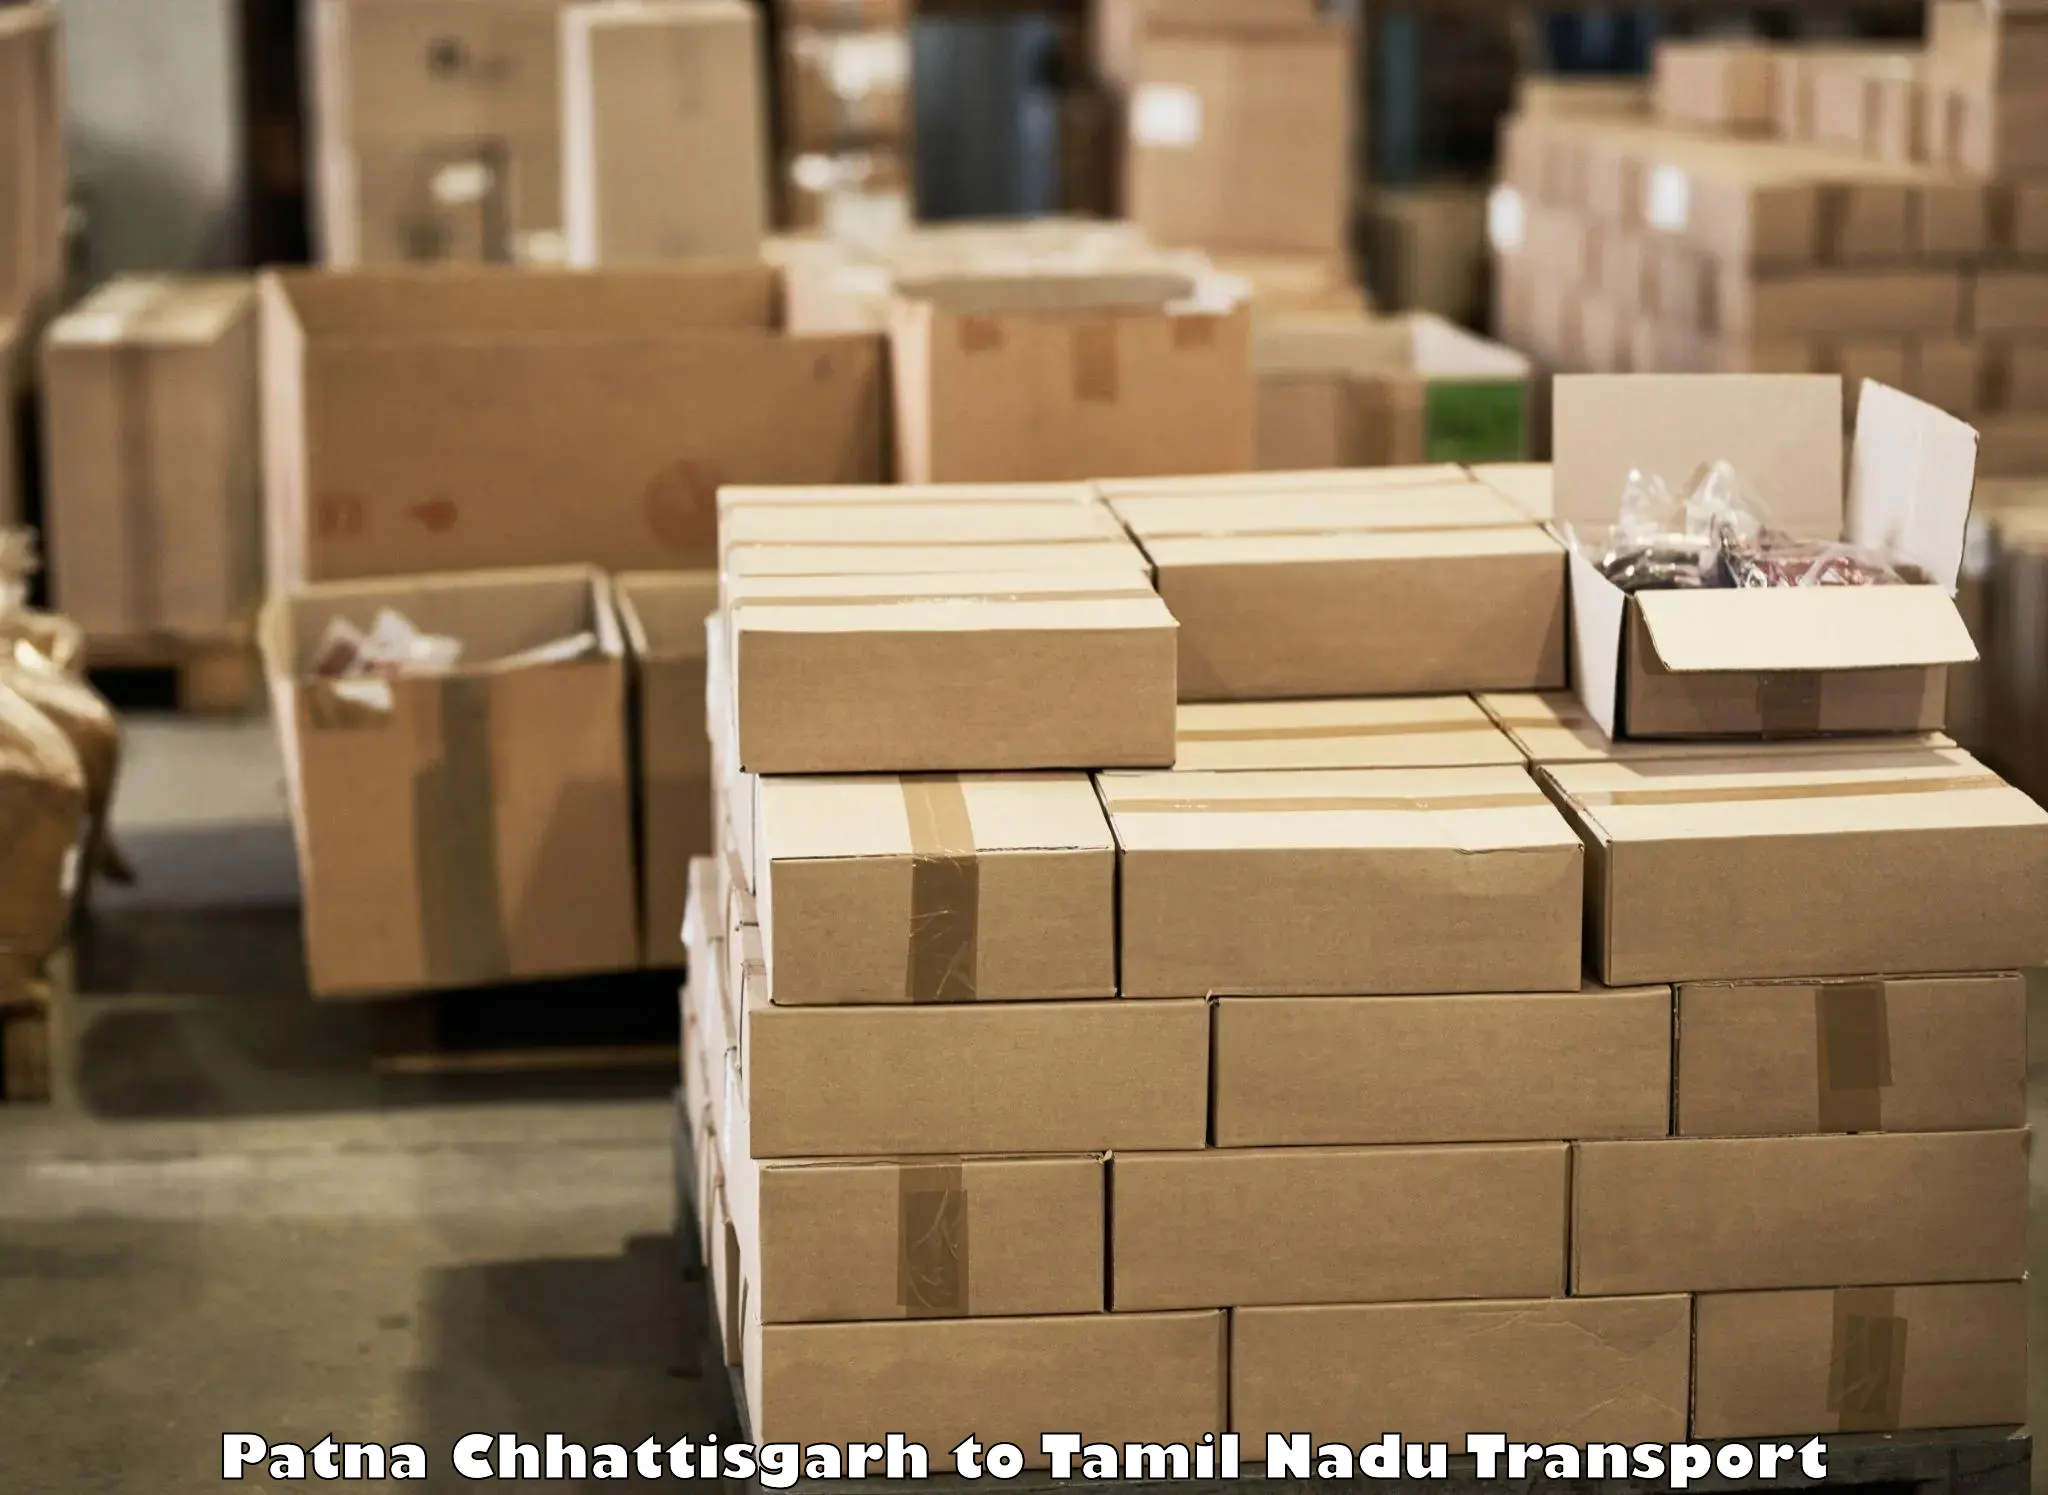 Intercity transport Patna Chhattisgarh to Tamil Nadu